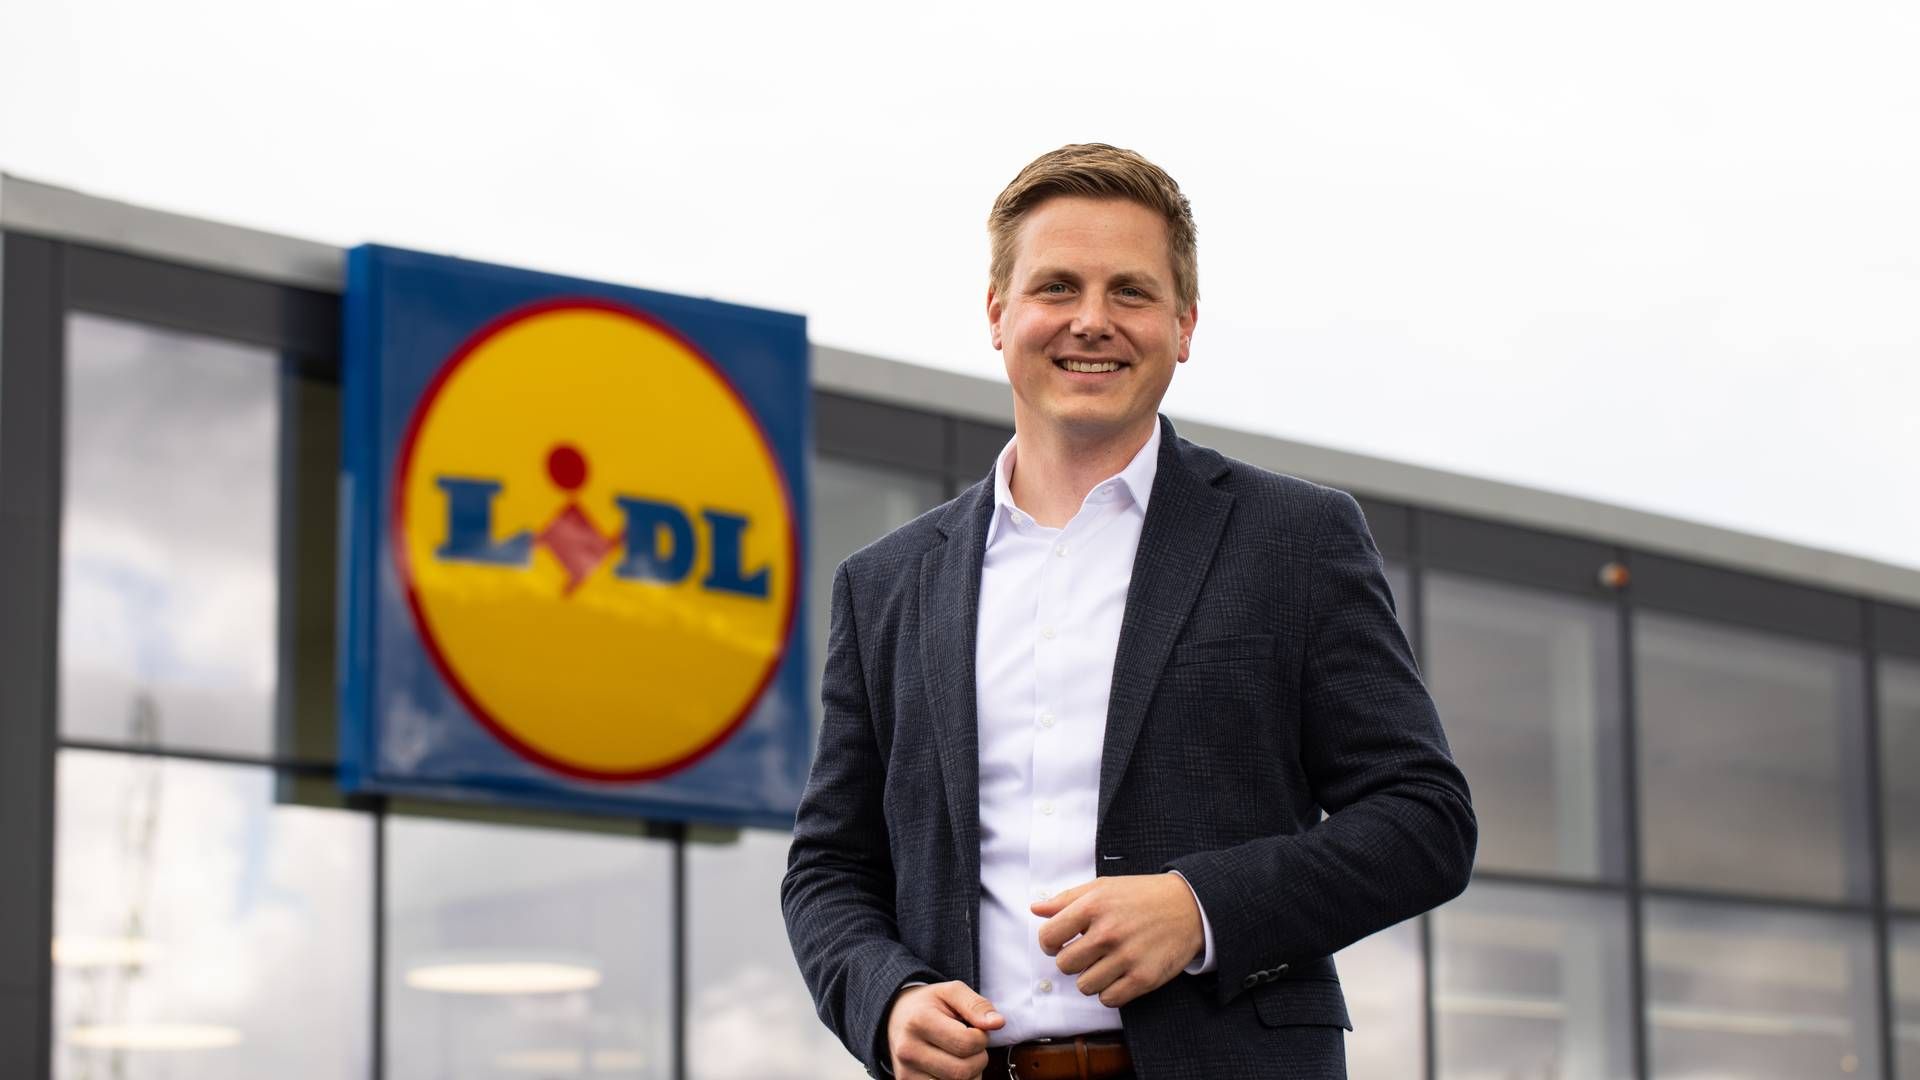 "Vi bevæger os gradvist i en mere digital retning ," siger Jens Stratmann, der har været adm. direktør i Lidl siden juni 2021. | Foto: Pr/lidl Danmark